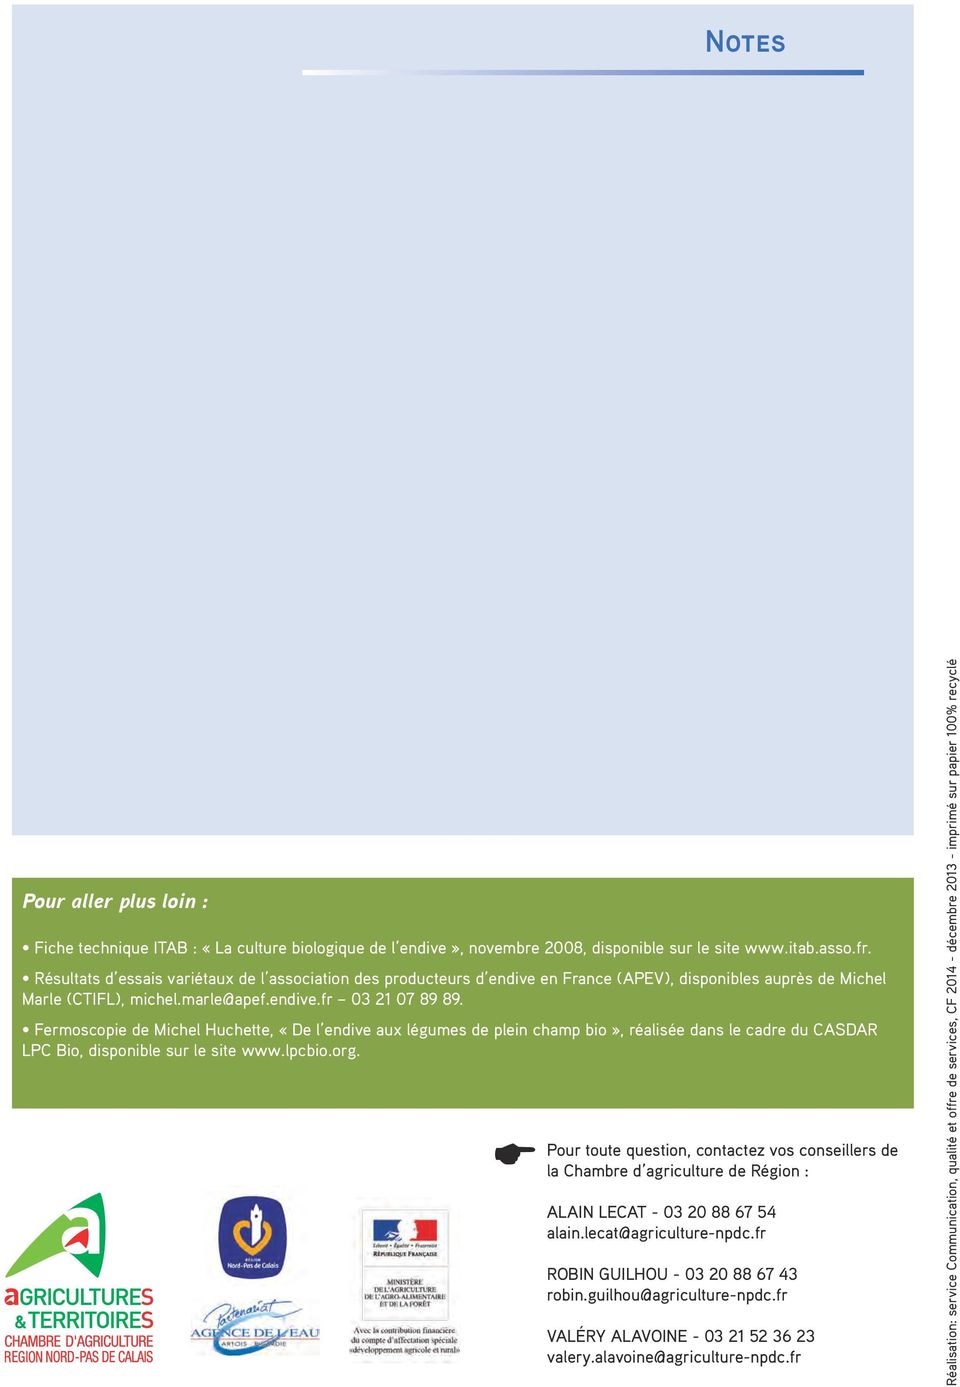 Fermoscopie de Michel Huchette, «De l endive aux légumes de plein champ bio», réalisée dans le cadre du CASDAR LPC Bio, disponible sur le site www.lpcbio.org.